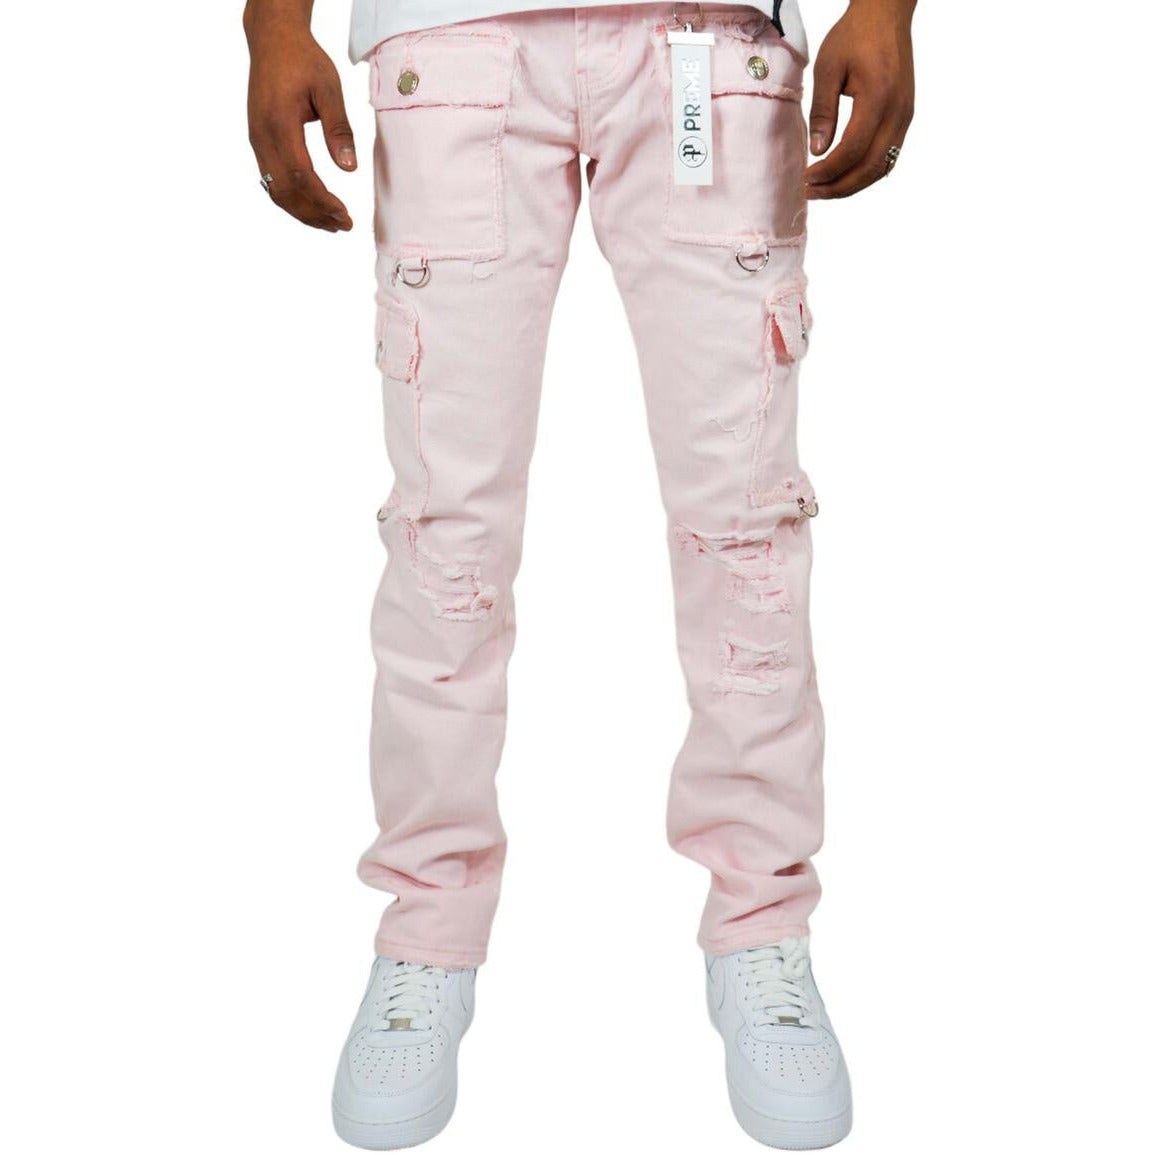 PREME Powder Pink Ripped Cargo Denim Jeans (PR-WB-1285)